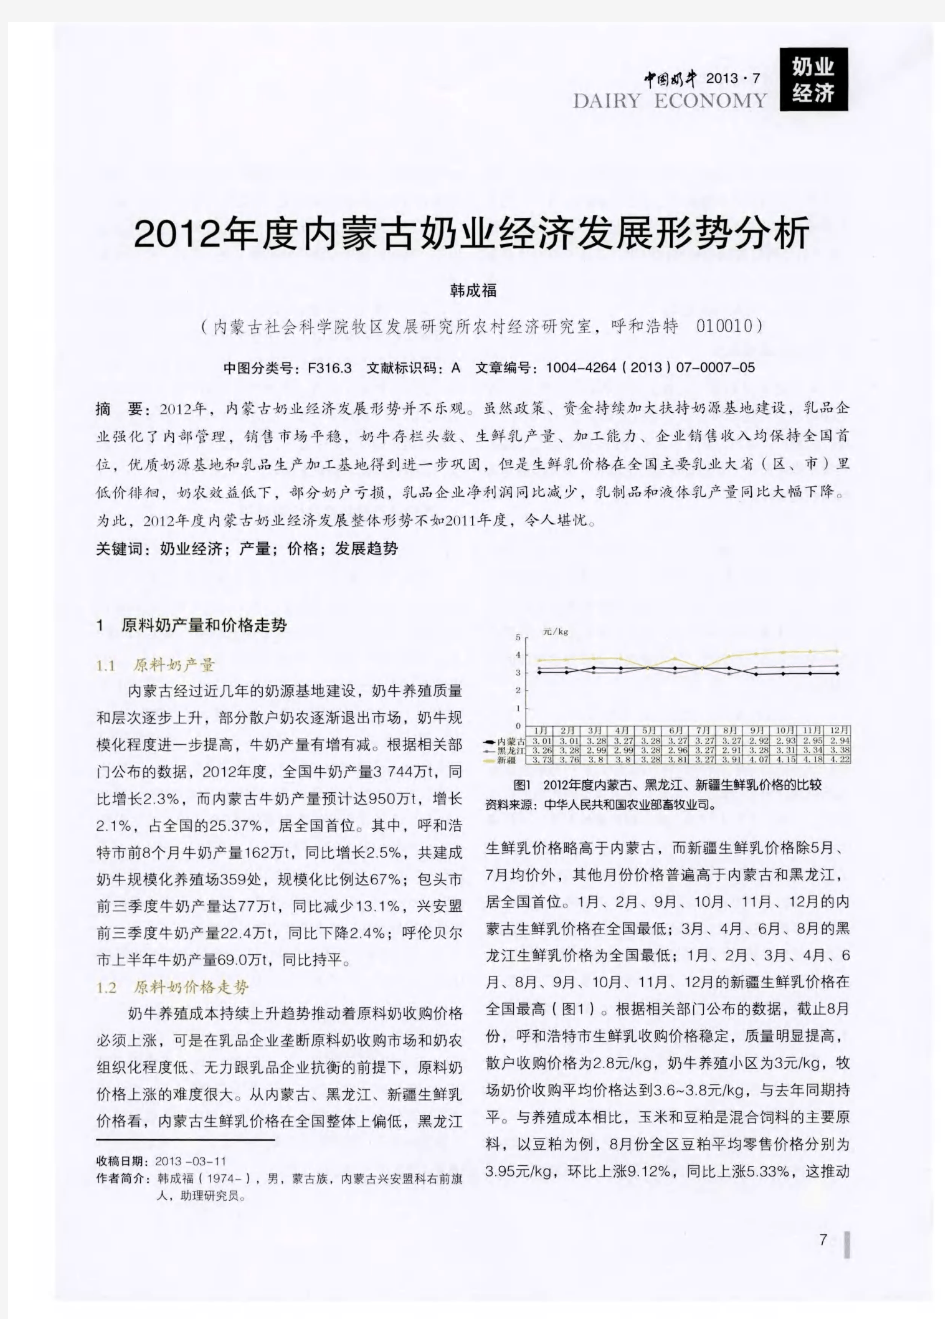 2012年度内蒙古奶业经济发展形势分析